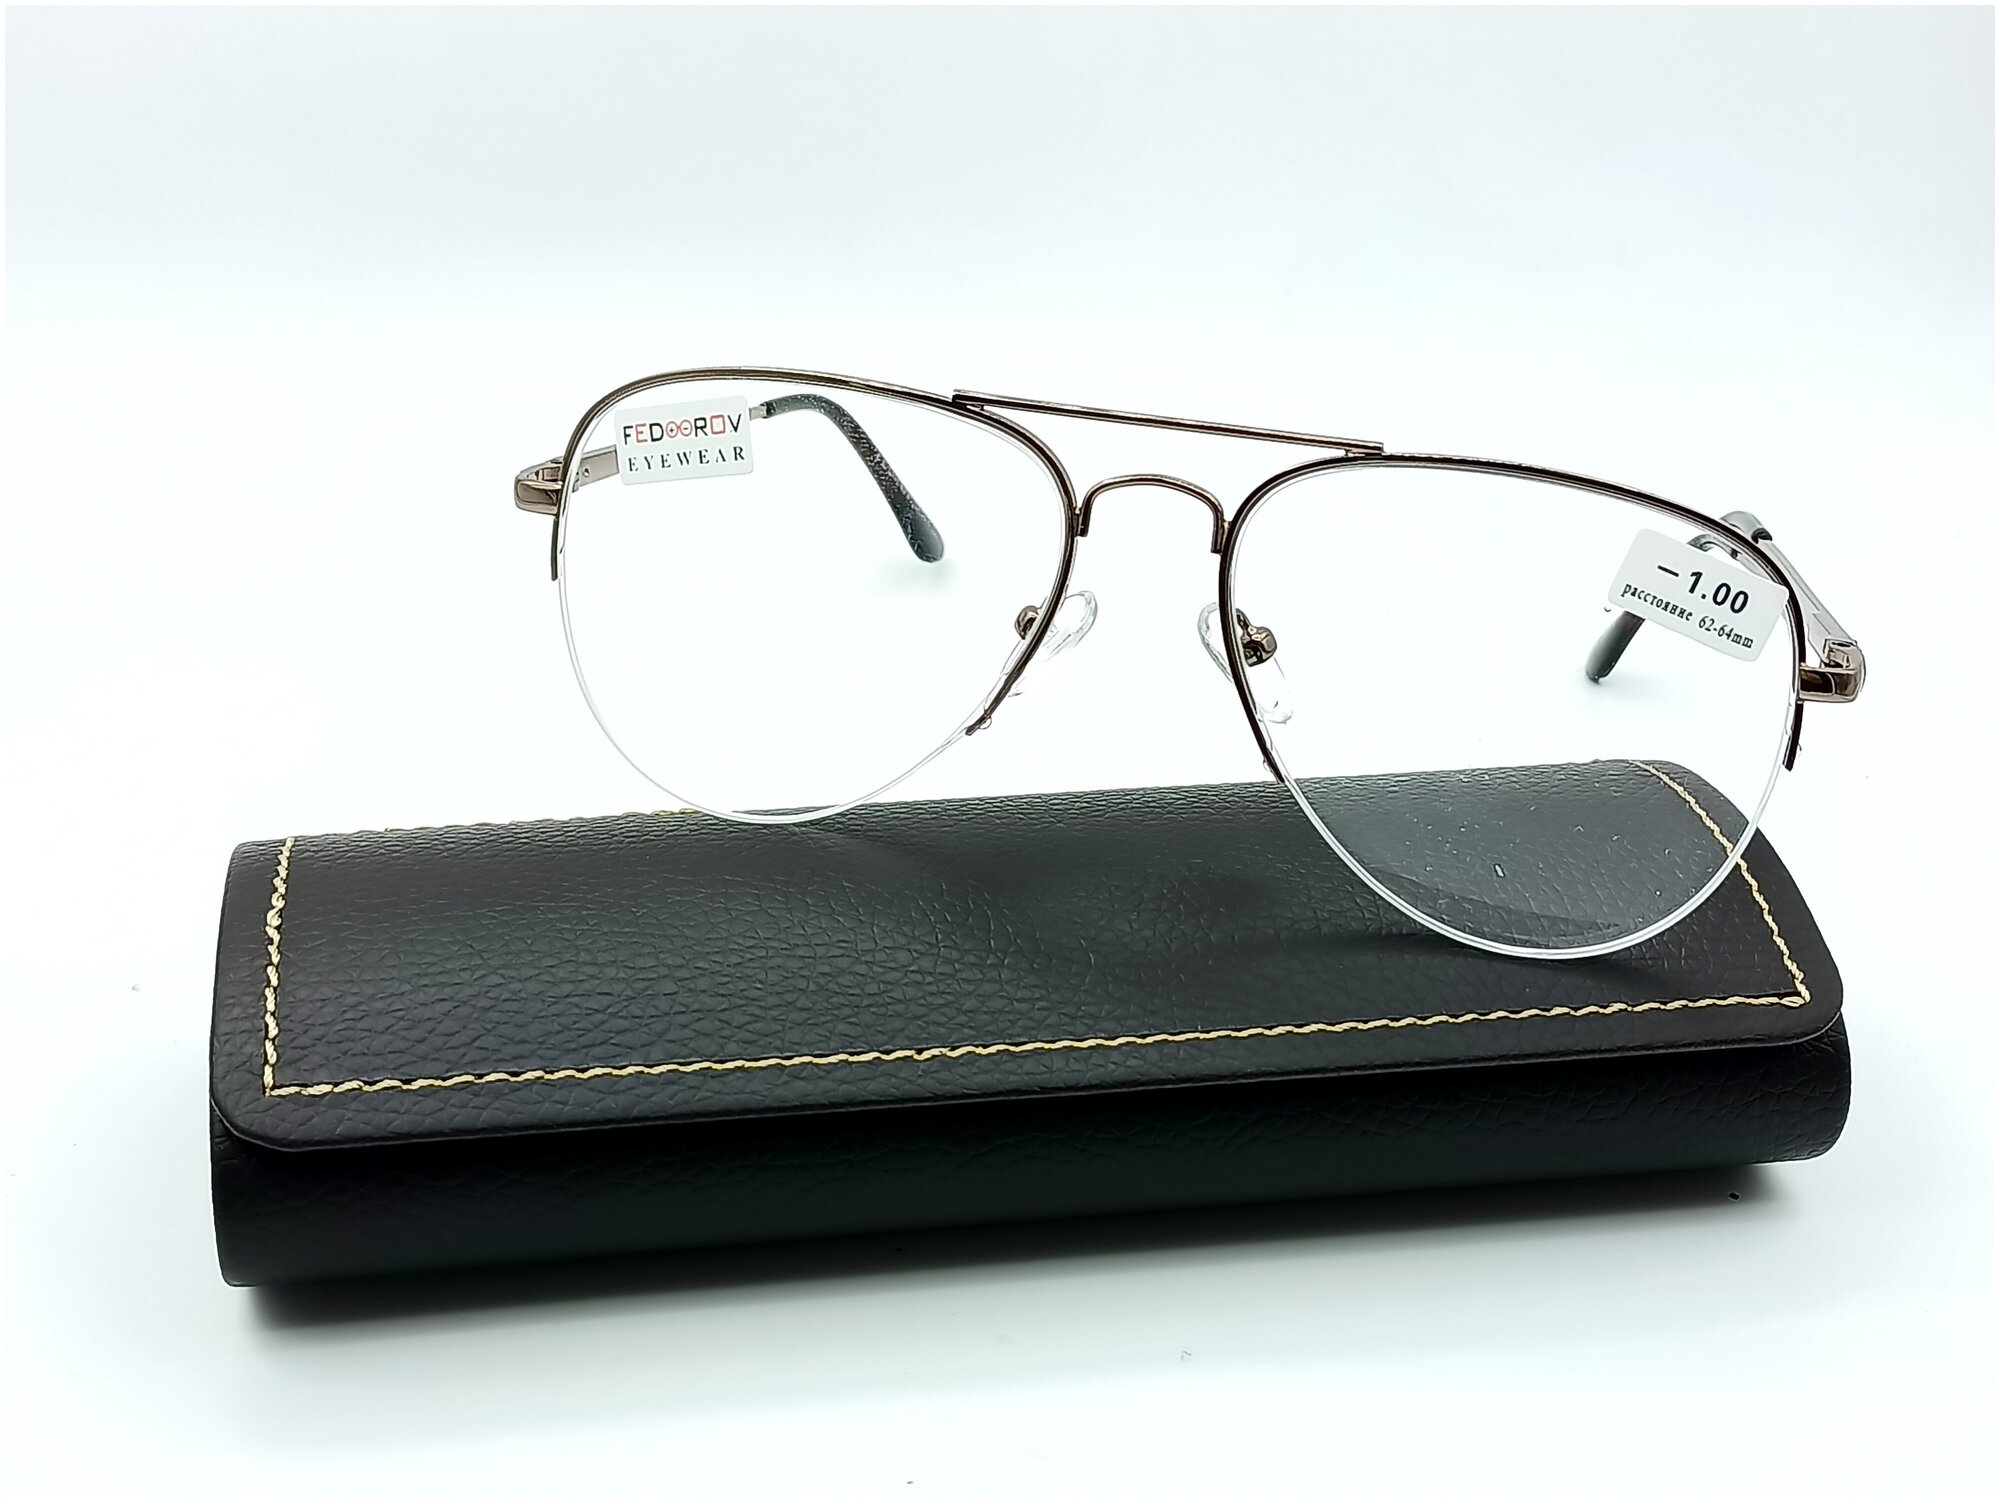 Готовые очки в стильной оправе FEDROV Авиаторы бронза +4.00 с футляром и салфеткой